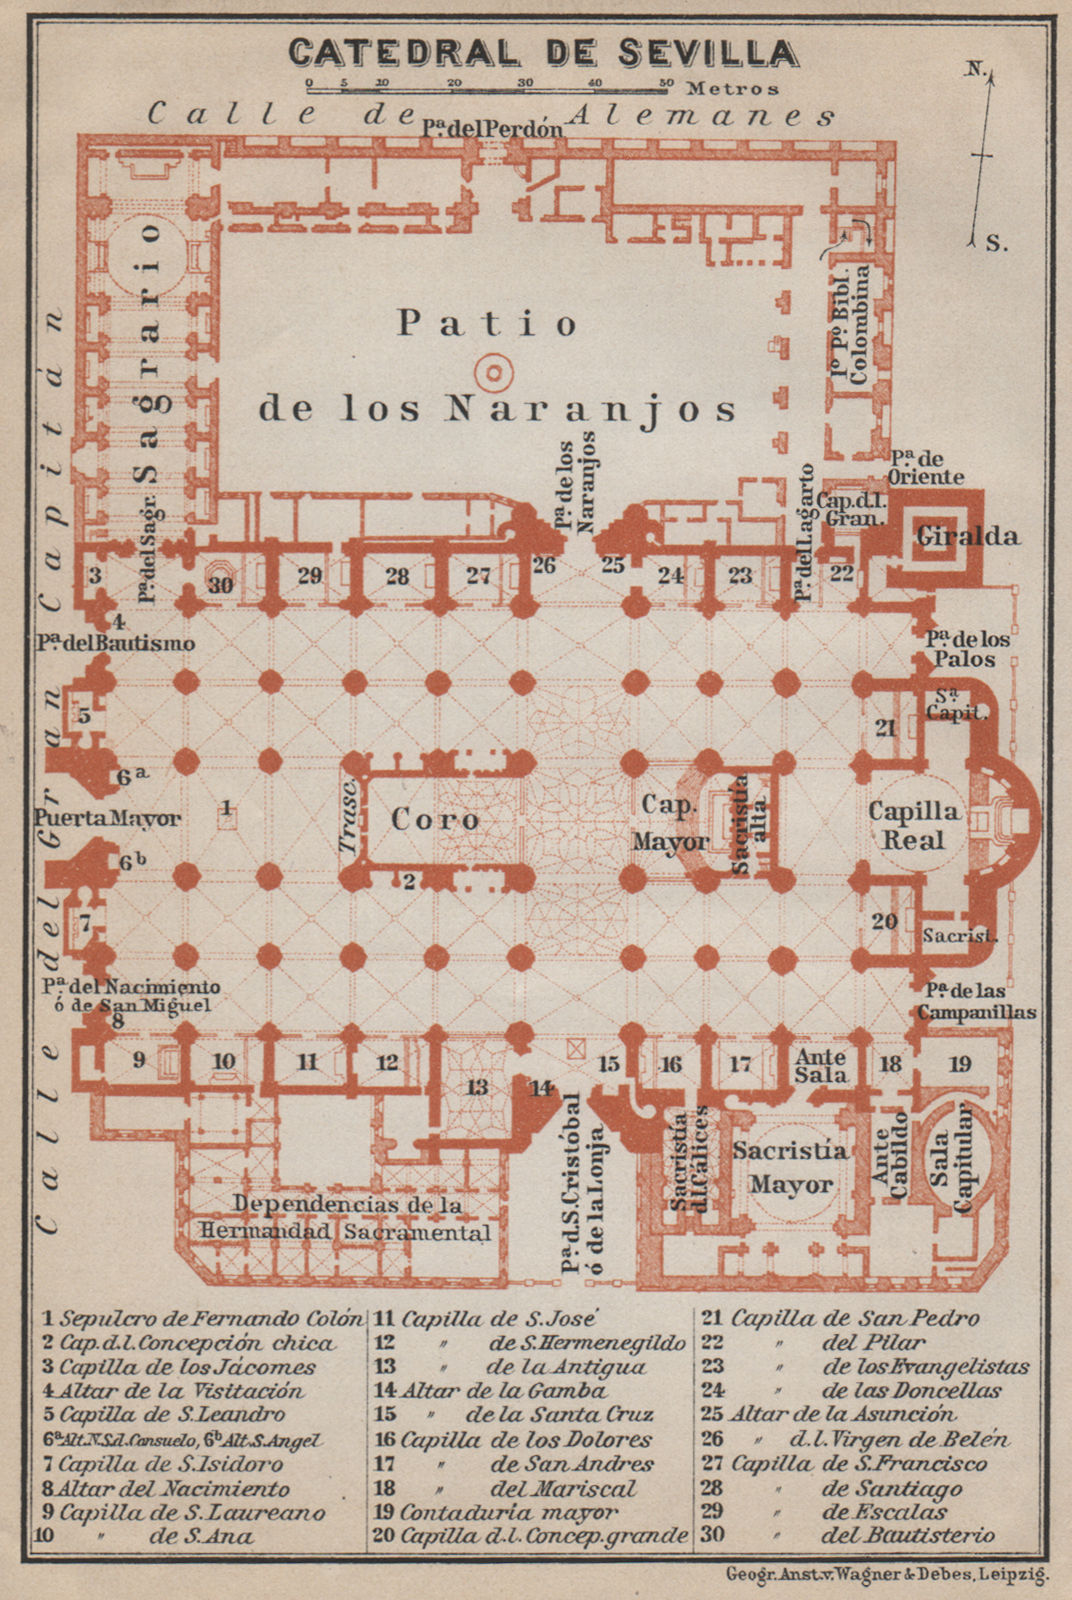 CATHEDRAL OF SEVILLE. CATEDRAL DE SEVILLA floor plan. Spain España 1913 map